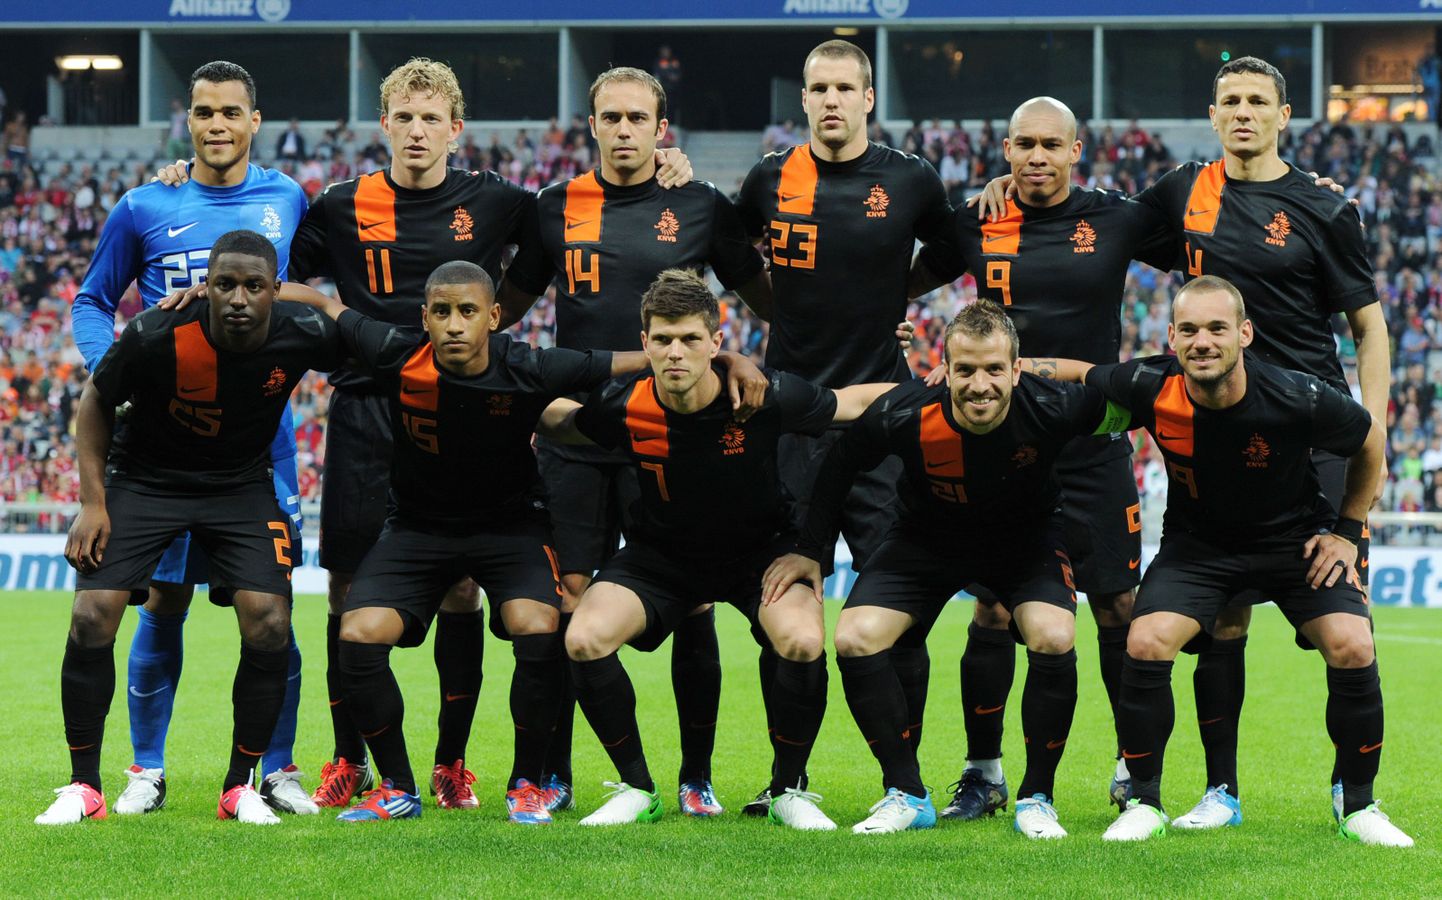 Hollandi jalgpallikoondis